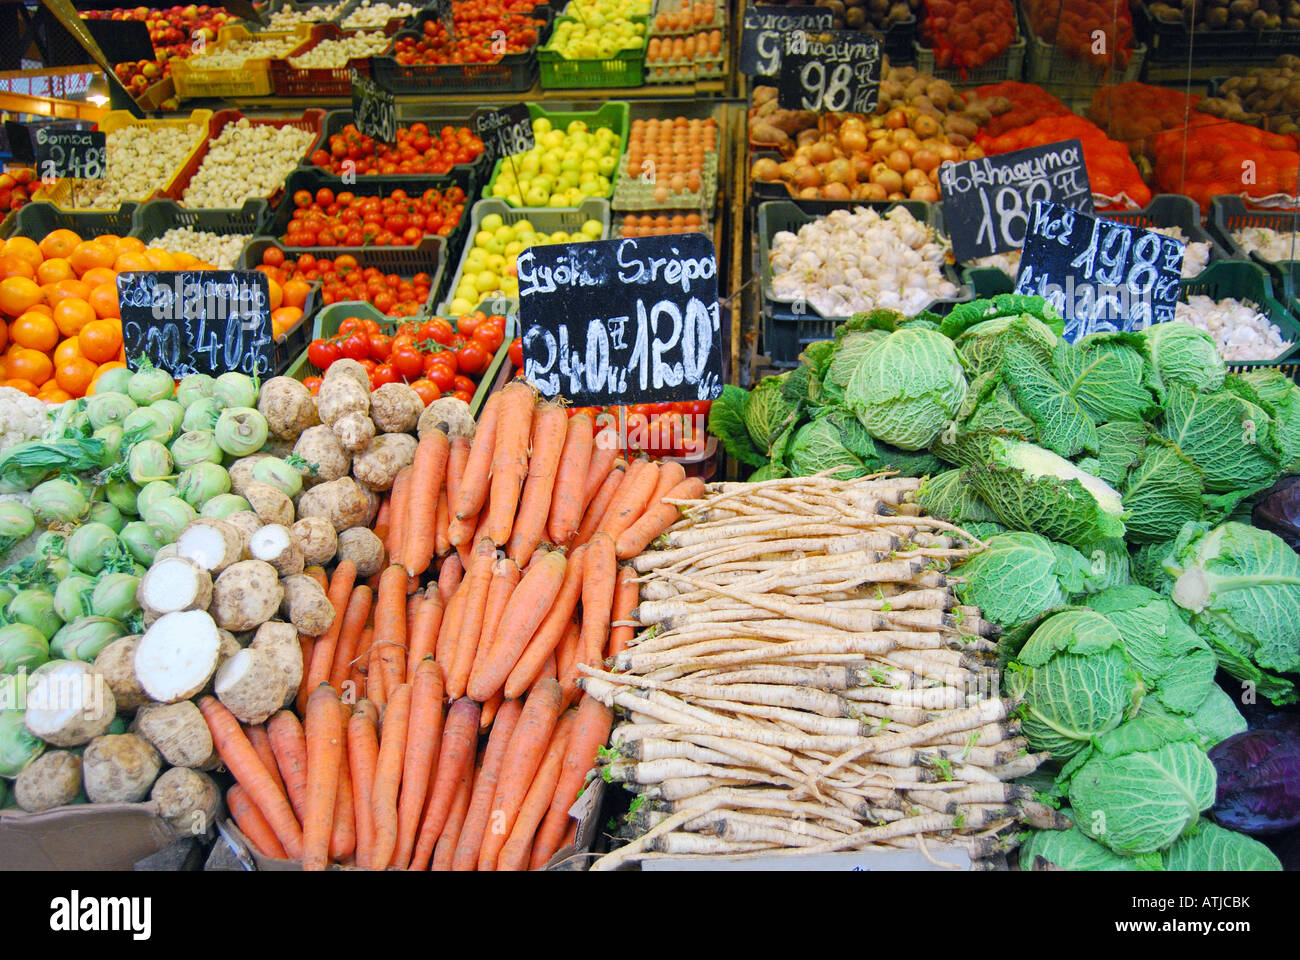 Obst und Gemüse stand die große Markthalle, Pest, Budapest, Ungarn Stockfoto